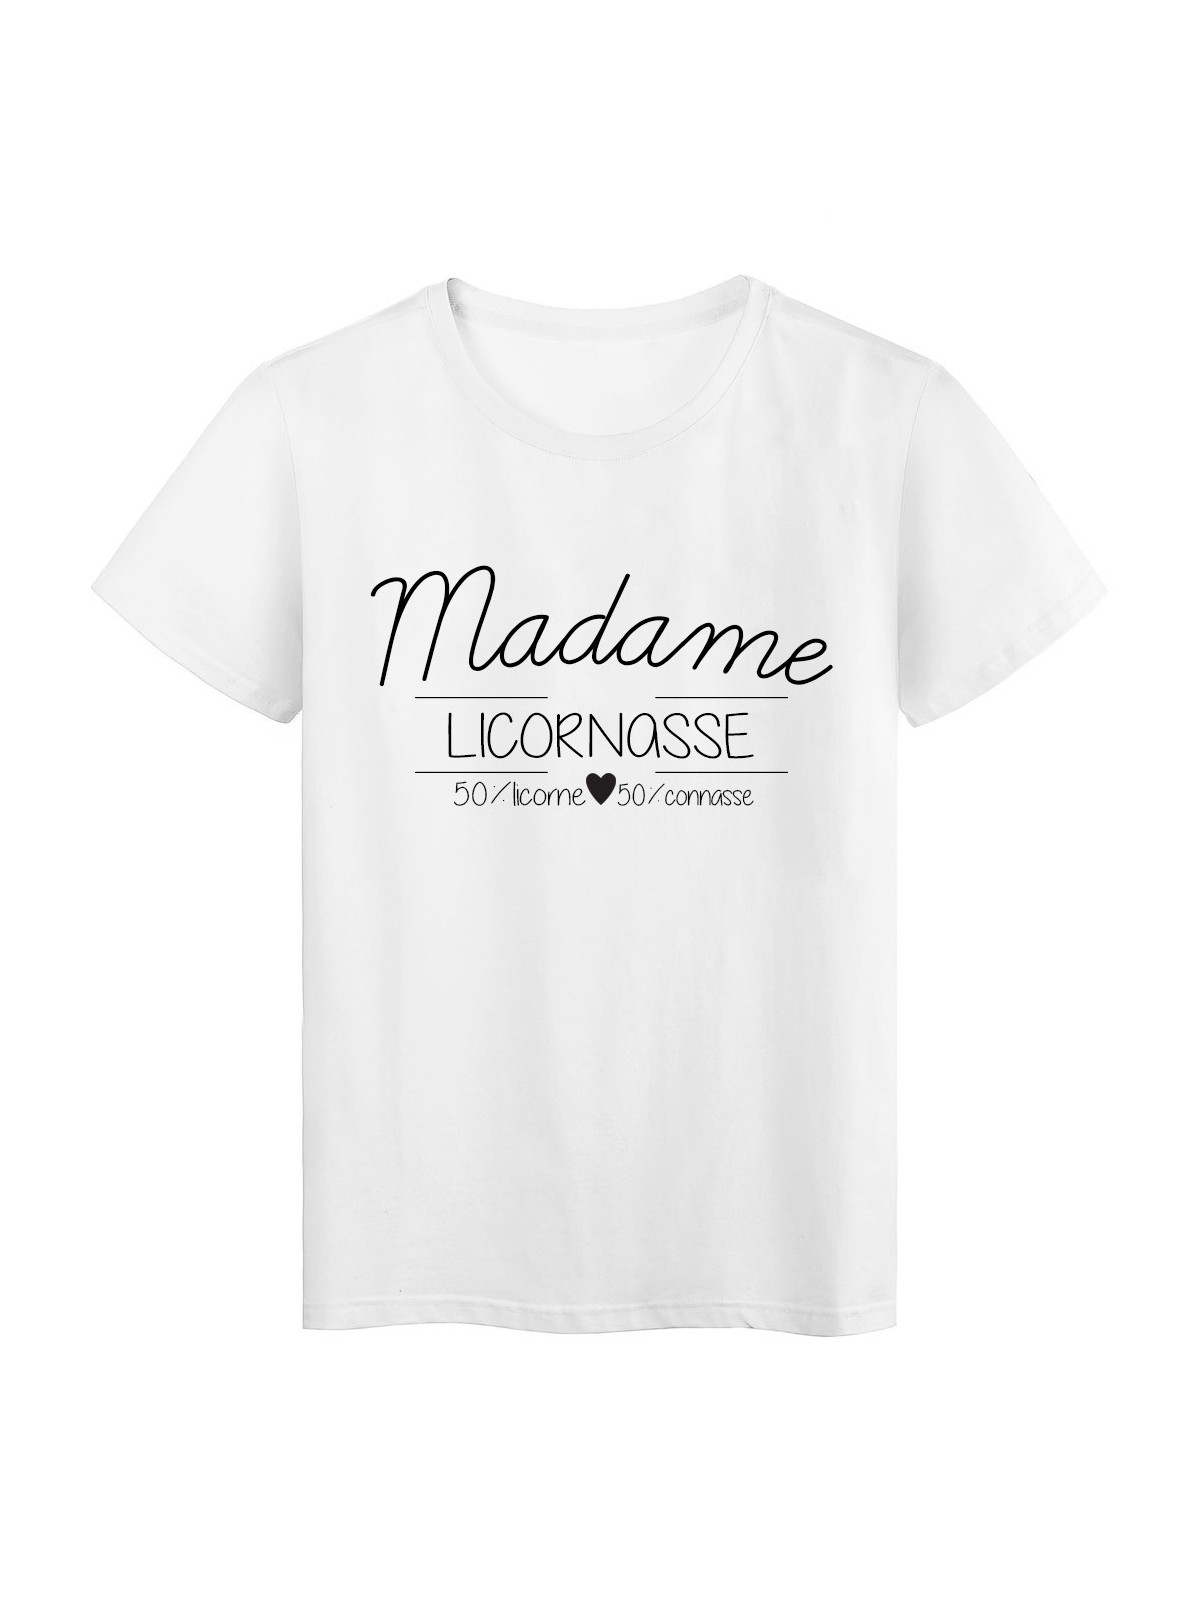 T-Shirt imprimÃ© humour design Madame Licornasse 50/ licorne 50/connasse rÃ©f 2204